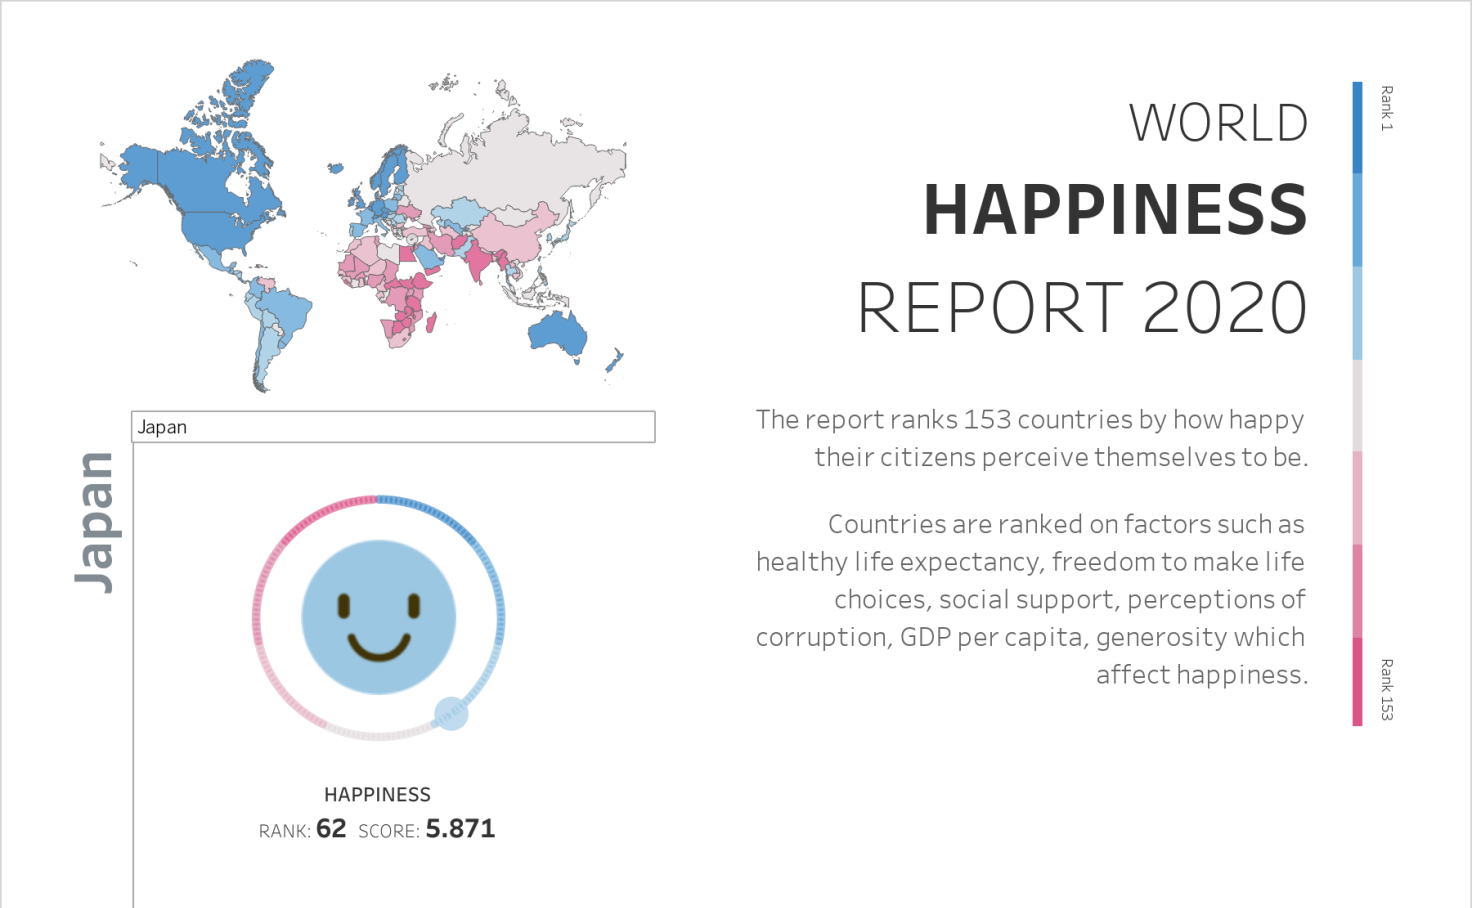 World Happiness Report 2020 Shivaraj Tableau Public